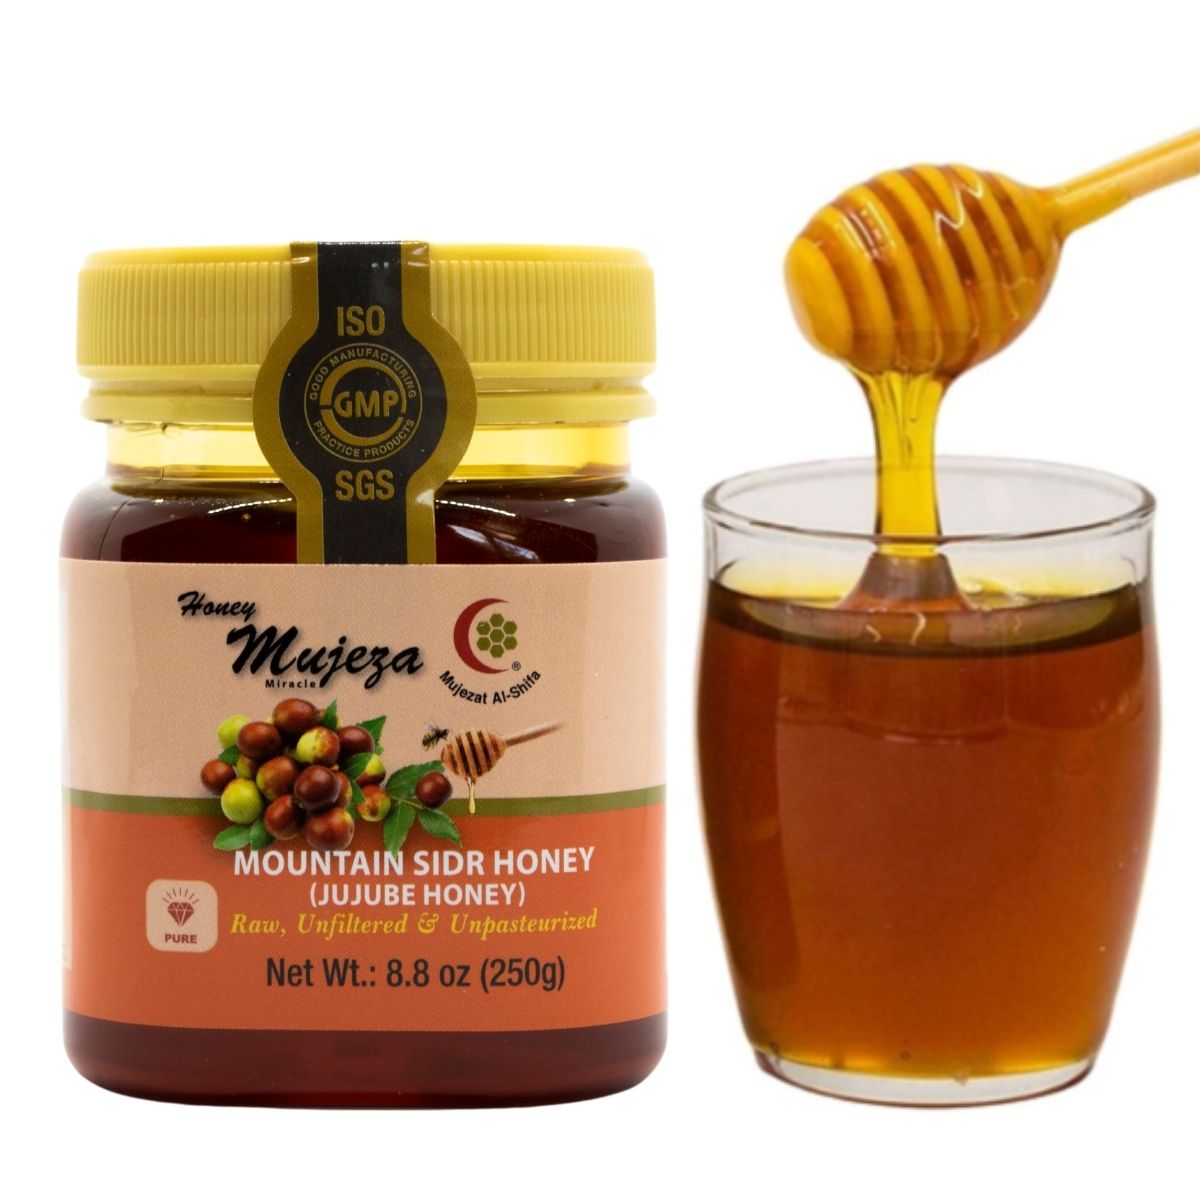 Pure Mountain Sidr Honey " Jujube Honey " - 250g - عسل السدر الجبلي الصافي - Mujeza Honey